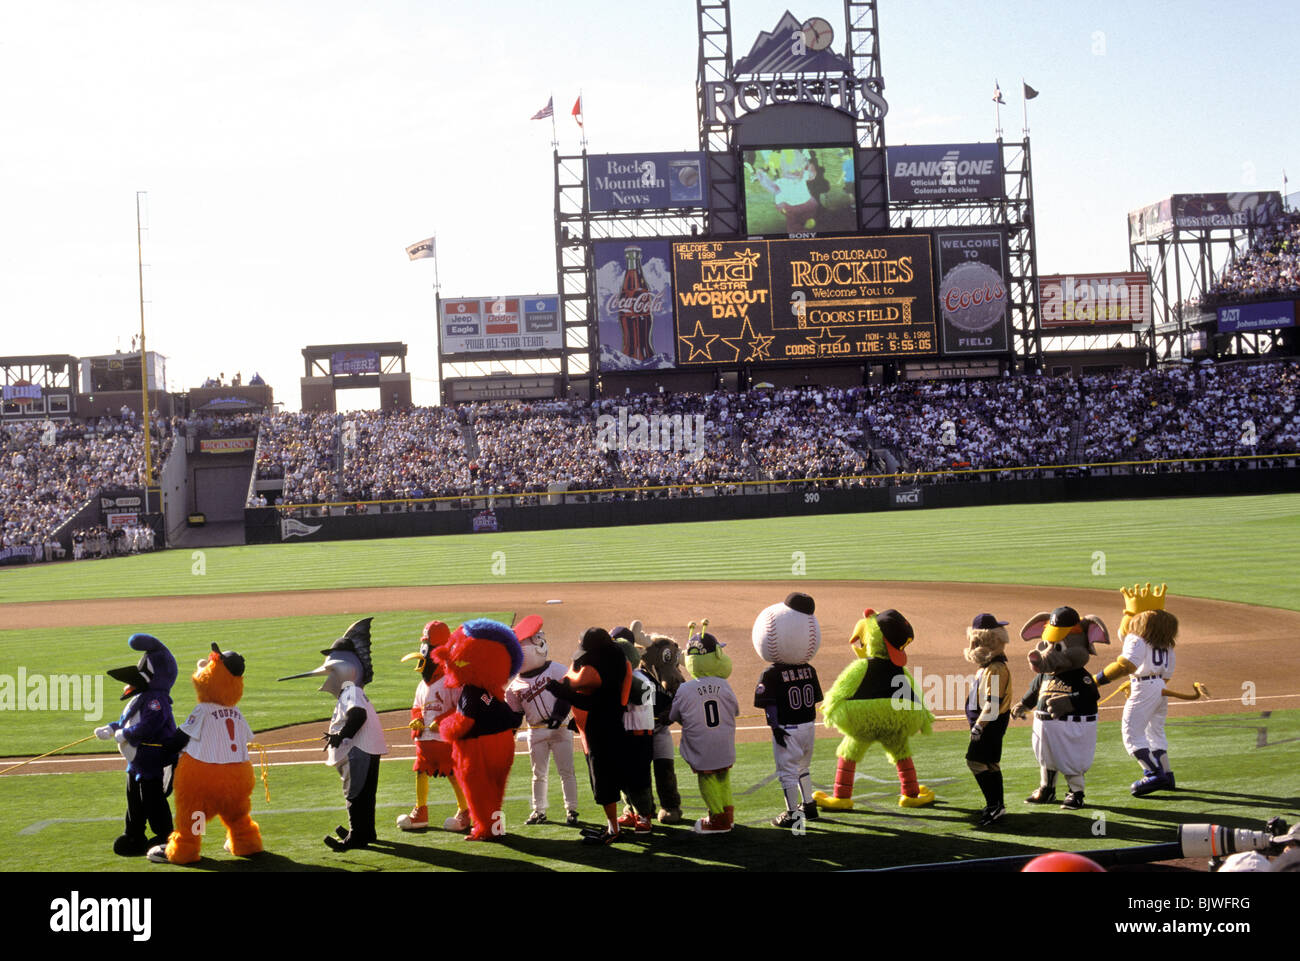 A Major League baseball game in Denver, Colorado. Stock Photo